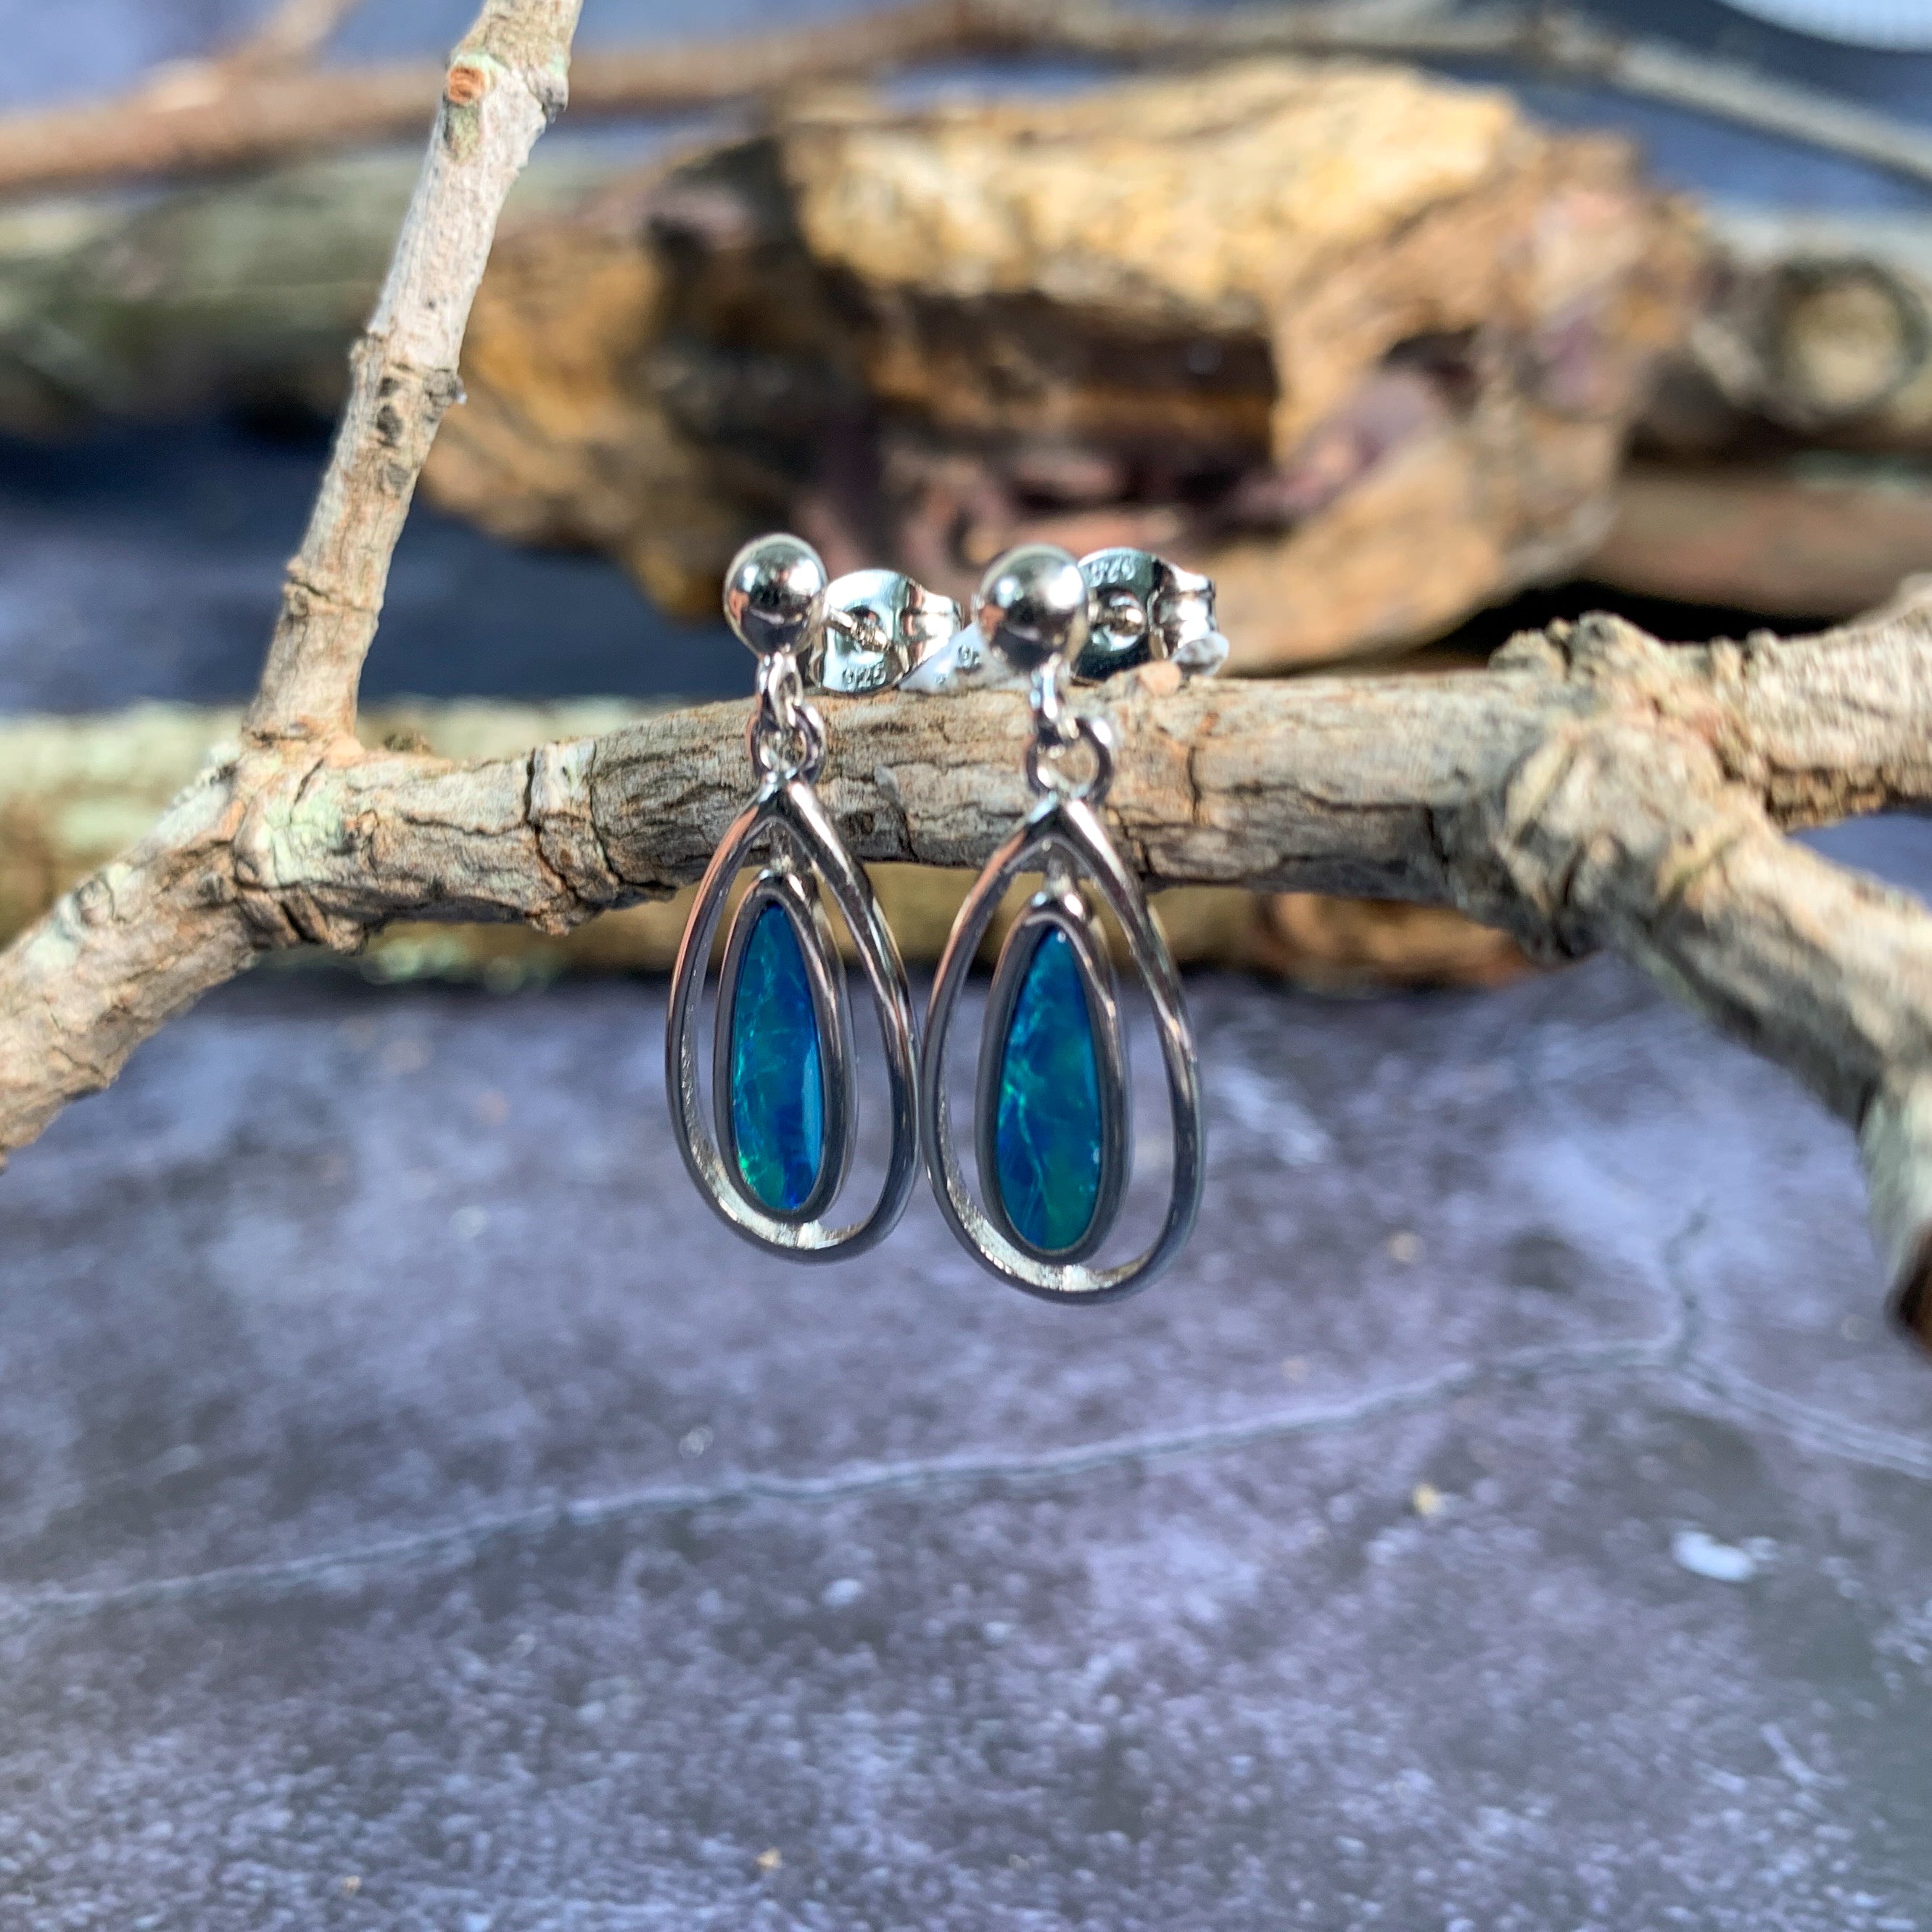 Sterling Silver dangling pear shape green blue opal earrings - Masterpiece Jewellery Opal & Gems Sydney Australia | Online Shop